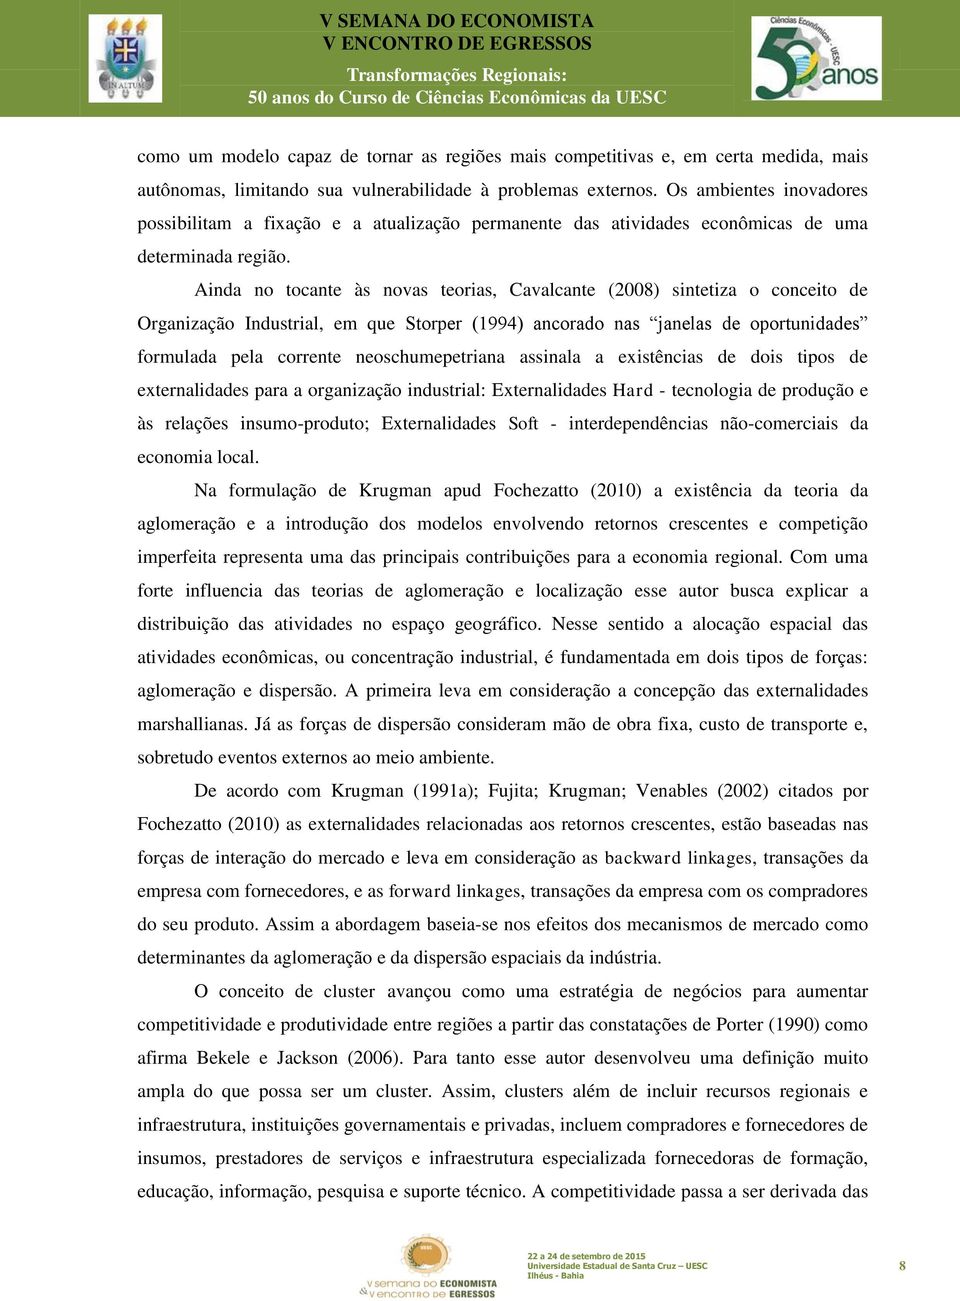 Ainda no tocante às novas teorias, Cavalcante (2008) sintetiza o conceito de Organização Industrial, em que Storper (1994) ancorado nas janelas de oportunidades formulada pela corrente